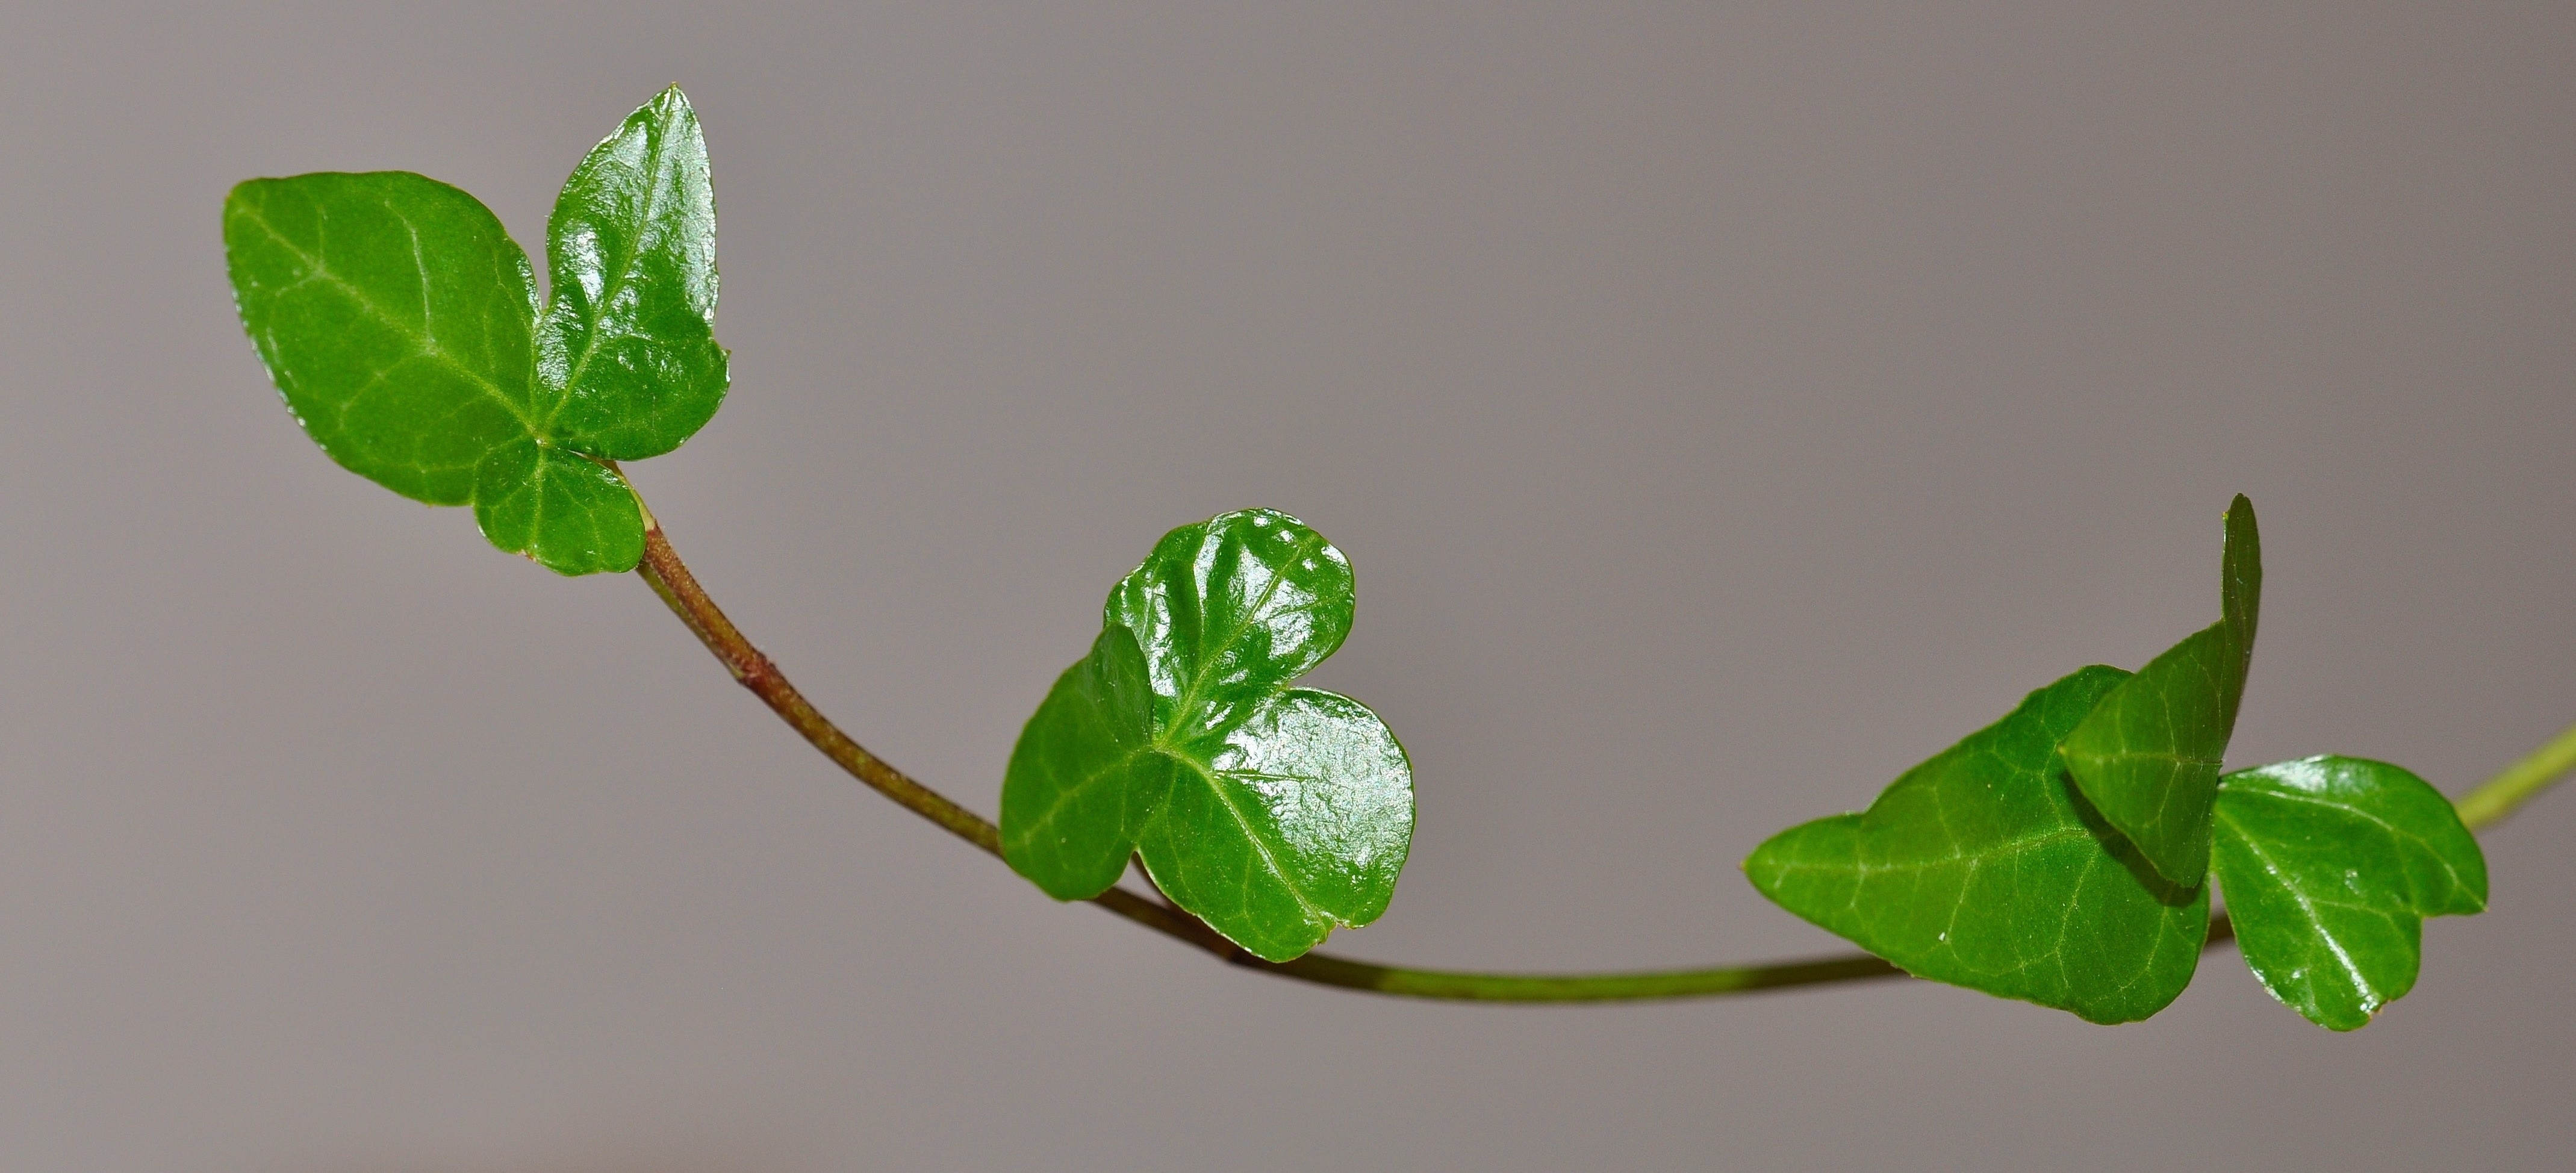 green clover leaf